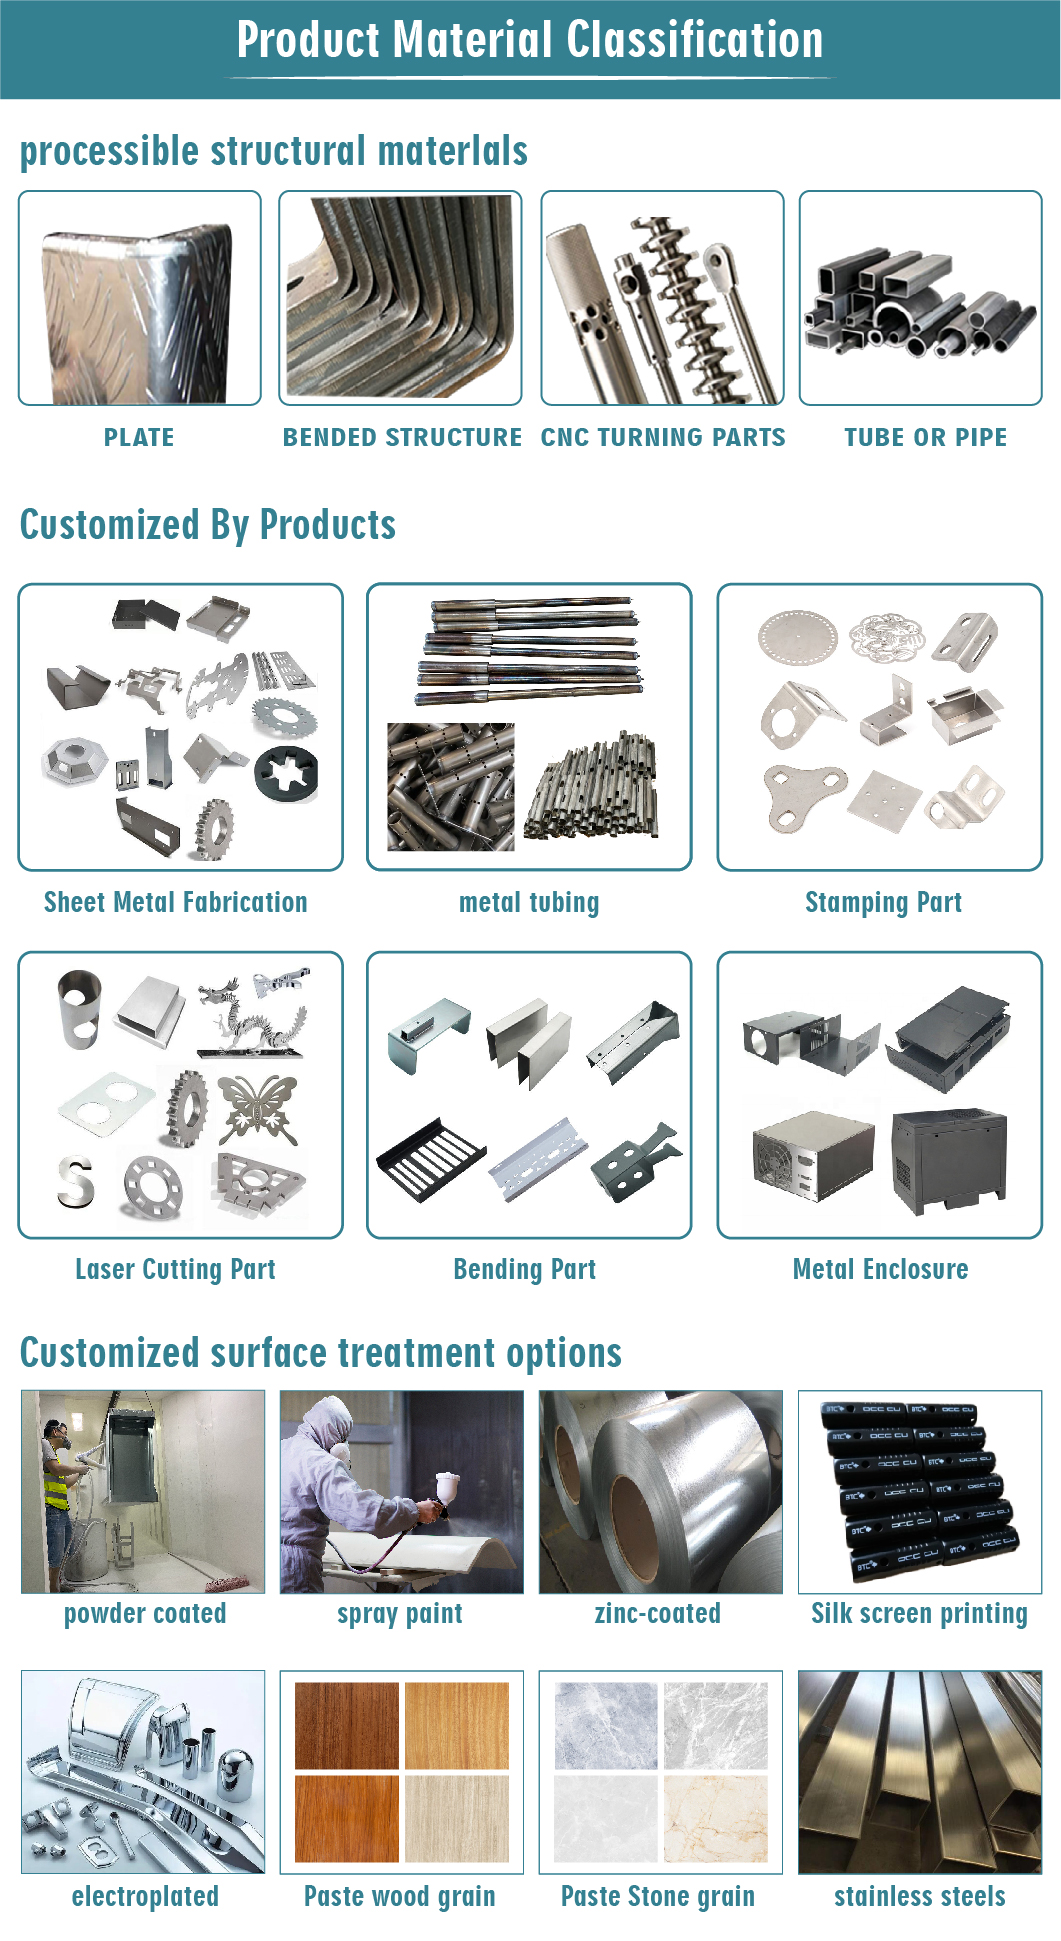 Sheet Metal Fabrication Sheet Metal Parts Stamping